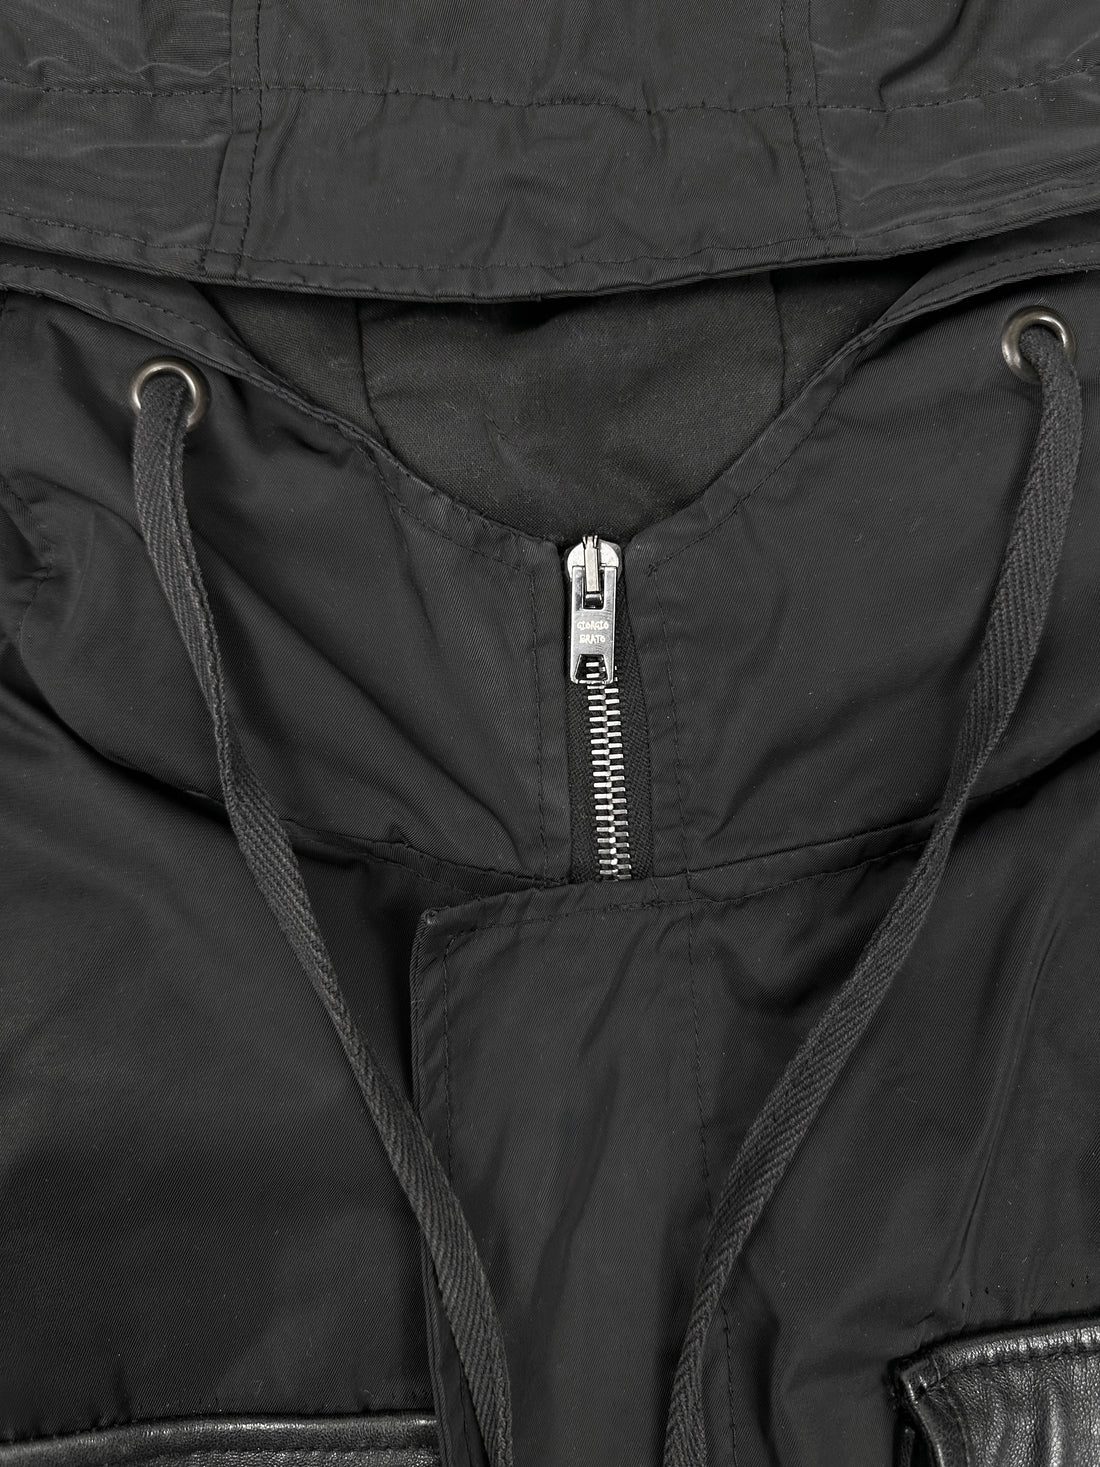 Giorgio Brato Nylon + Leather pockets utility Jacket 2000's